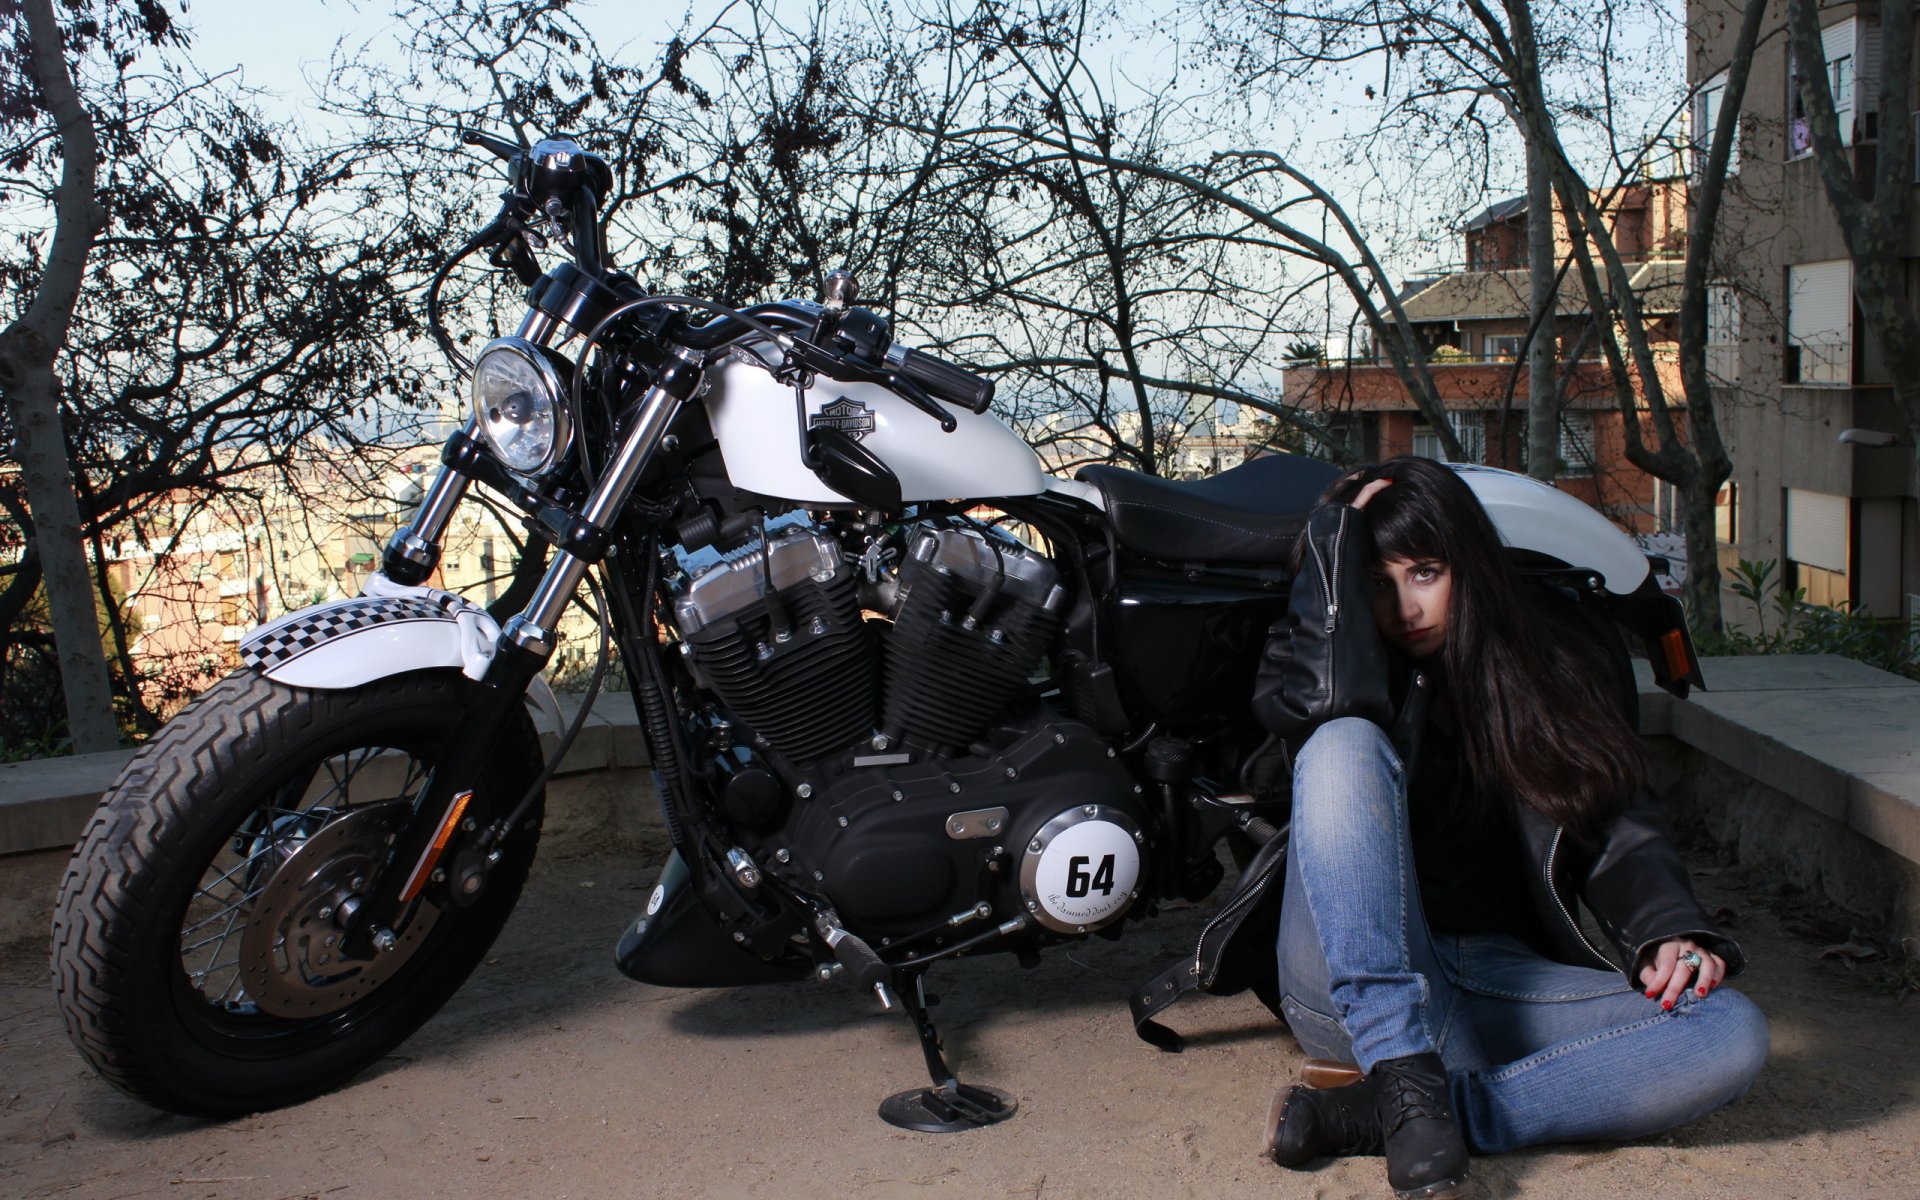 Девушка Возле Мотоцикла Фото